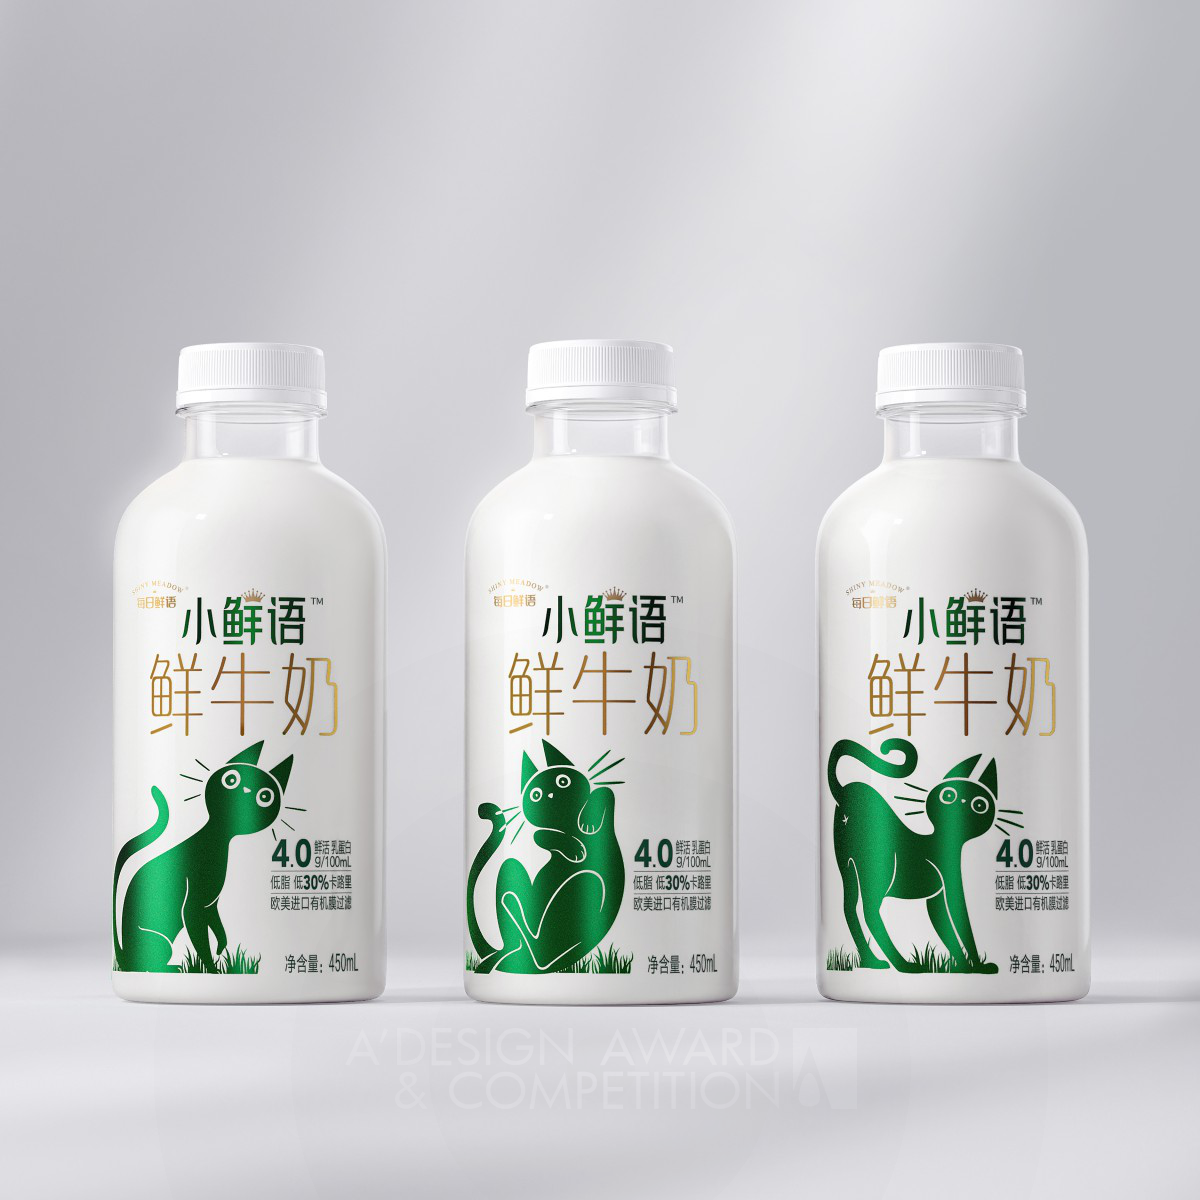 Уникальный дизайн упаковки молока "Milk Fit" от Li Huang